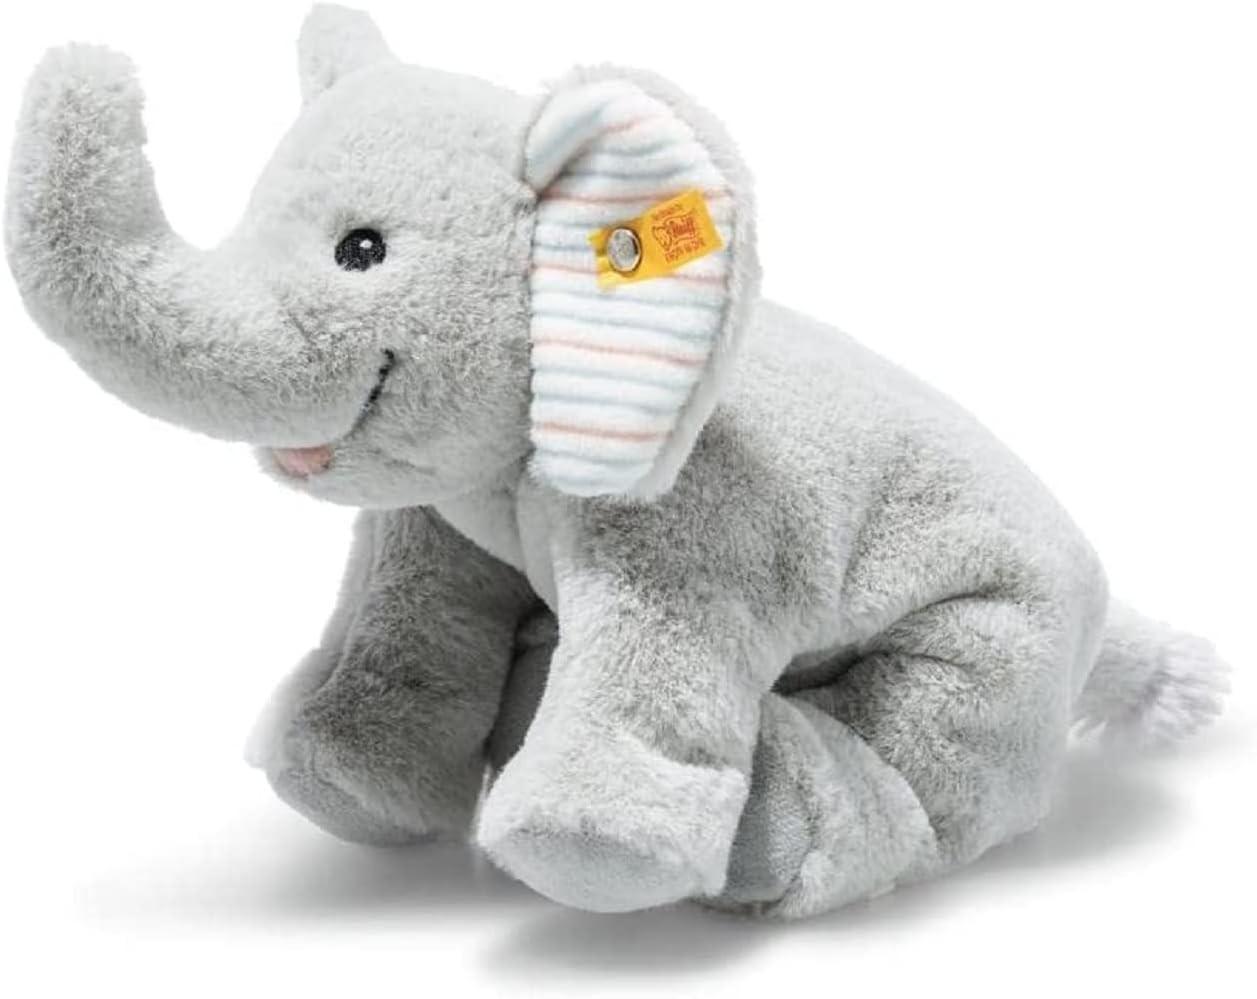 Steiff 242656 - Soft Cuddly Friends Floppy Trampili Elefant, hellgrau, 20 cm